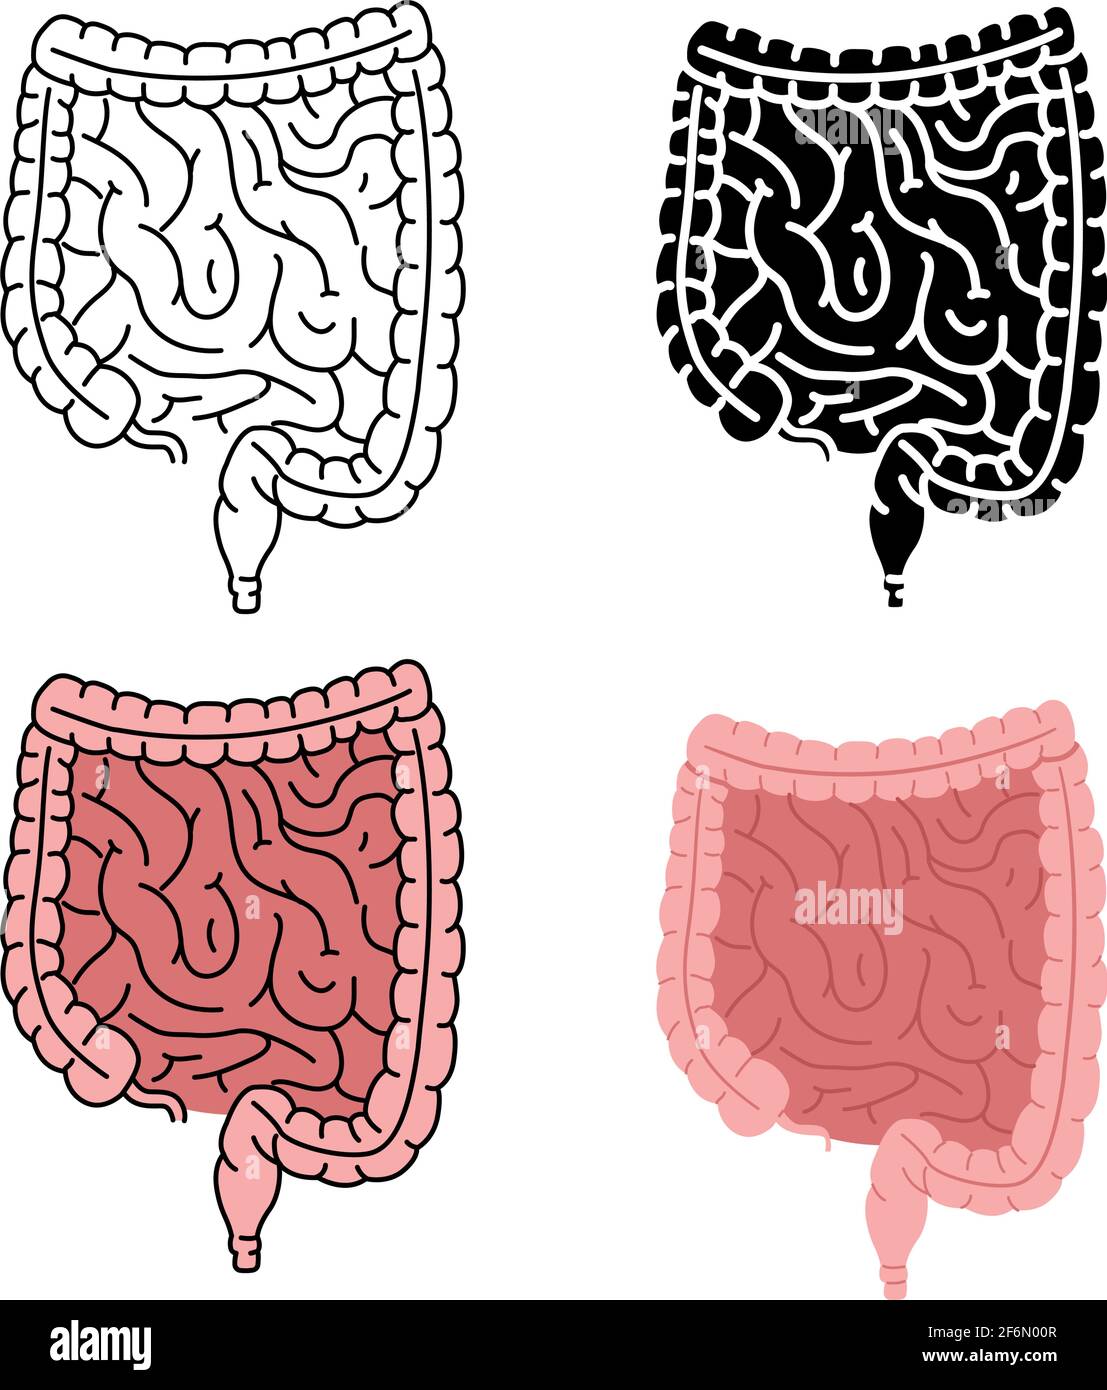 Illustrazione vettoriale dell'intestino umano sano isolata su sfondo bianco Illustrazione Vettoriale